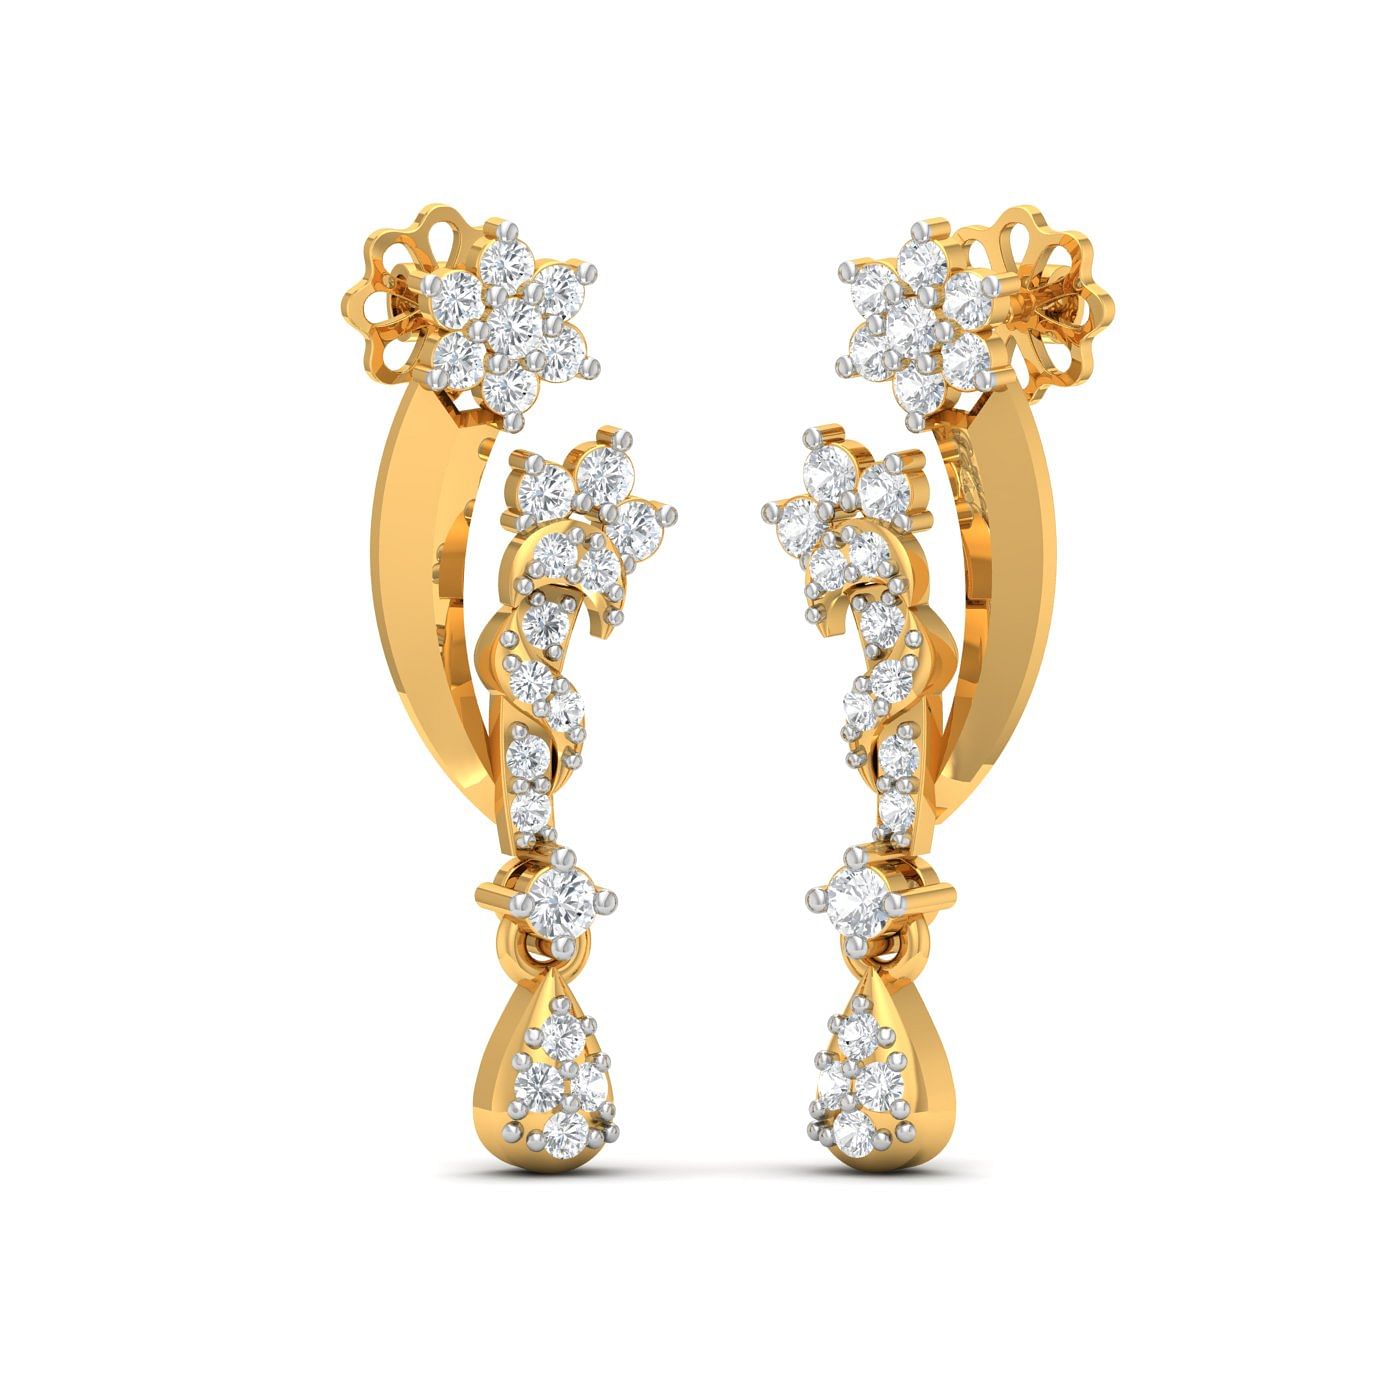 Small drop stud diamond earring in yellow gold